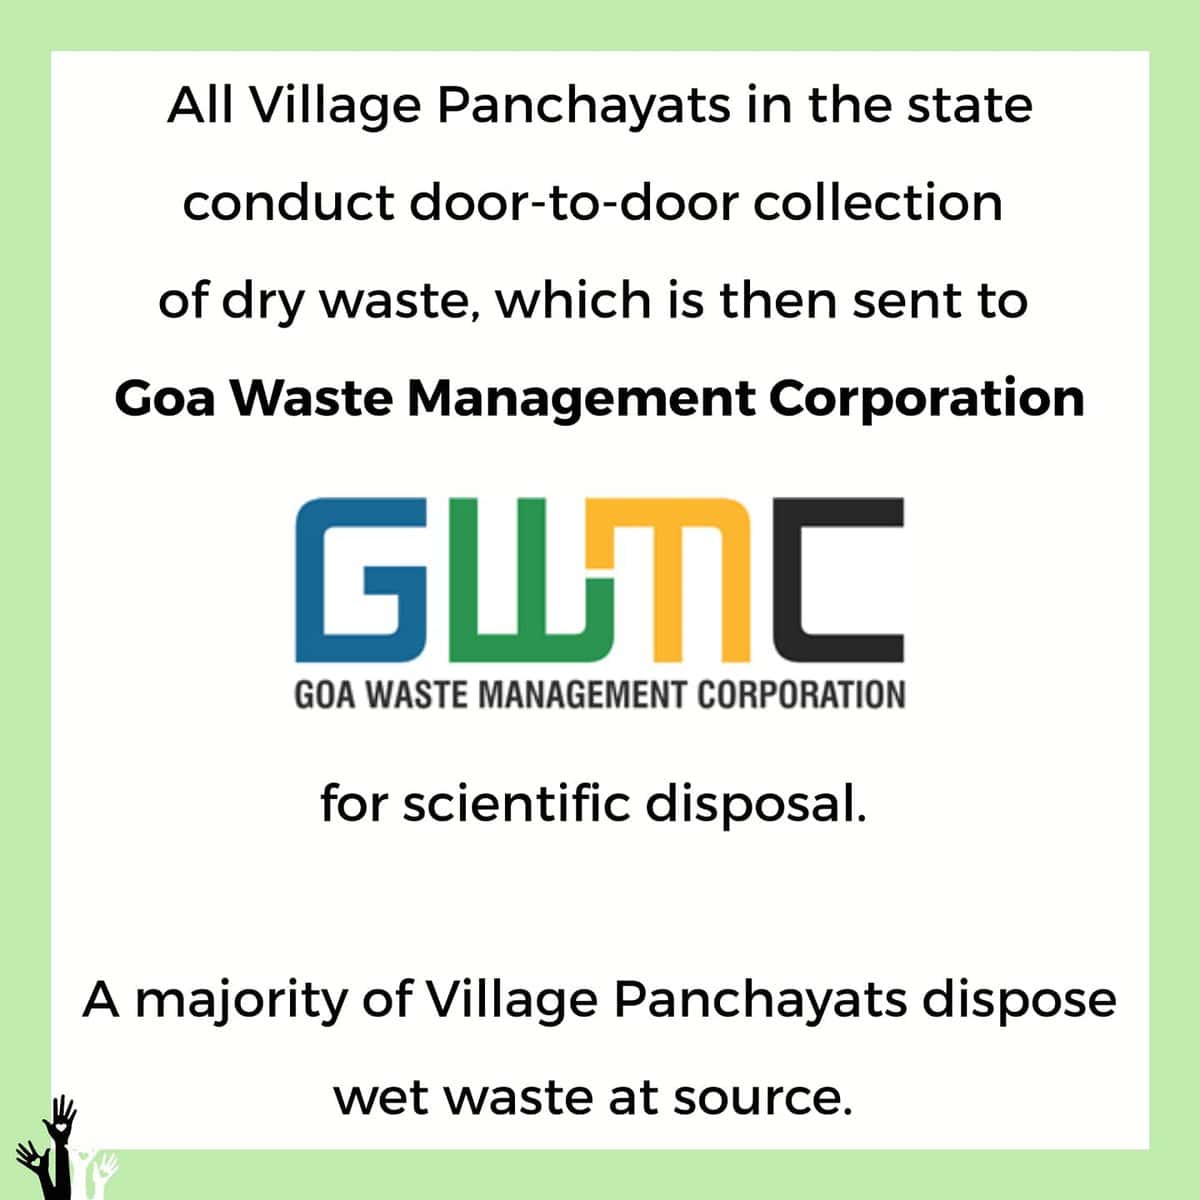 waste management in goa essay